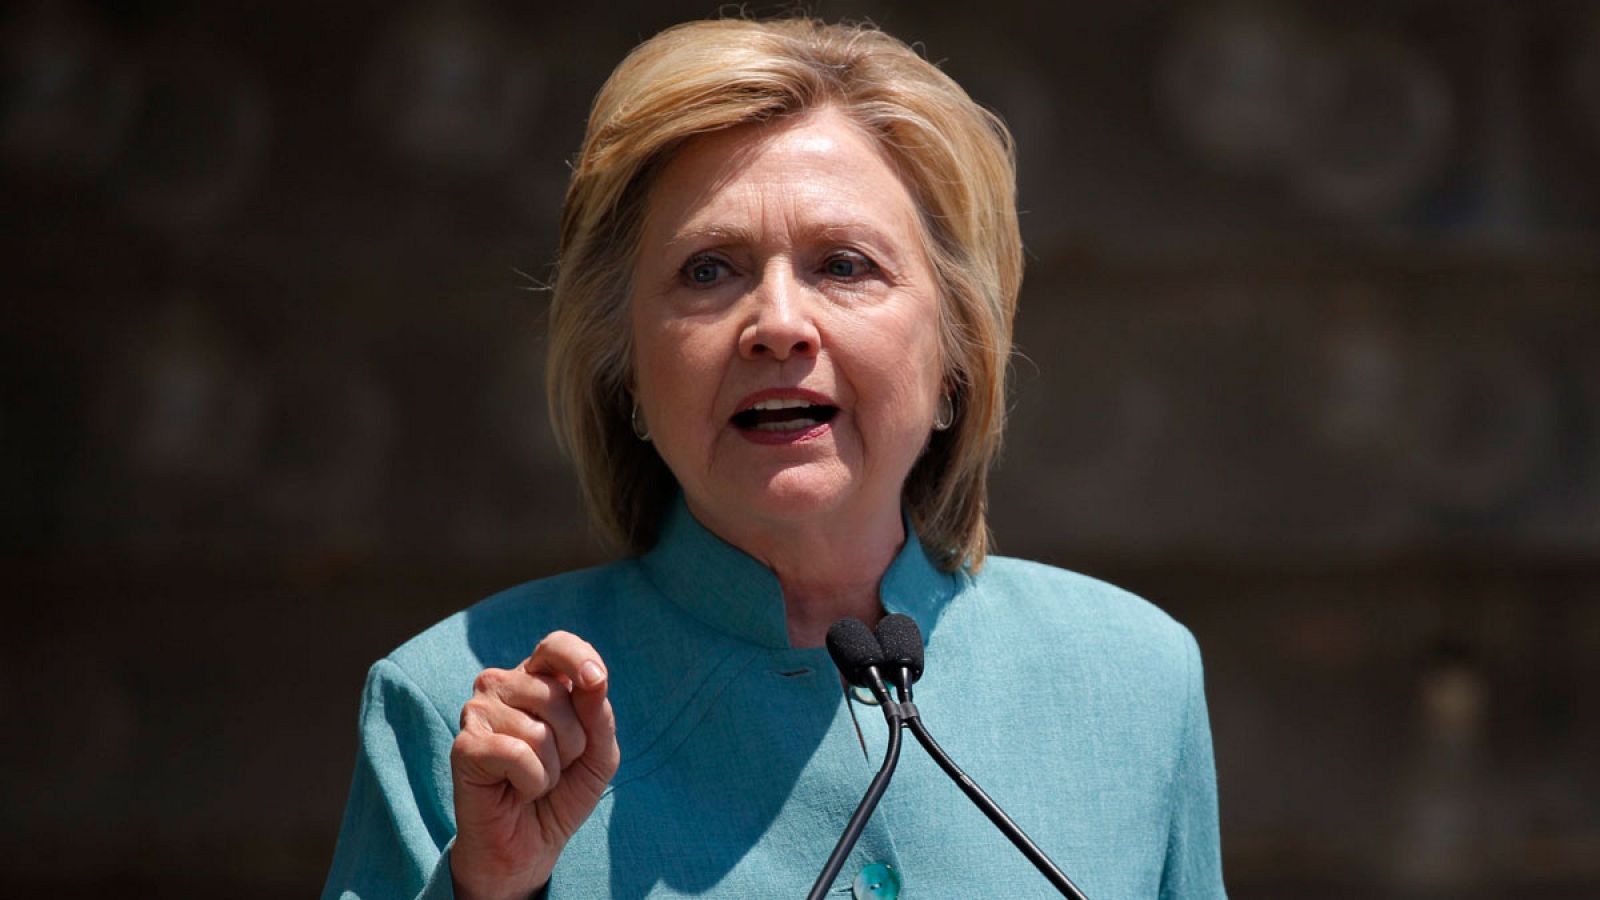 La aspirante presidencial demócrata Hillary Clinton durante un acto electoral en Atlantic City el pasado 6 de julio.